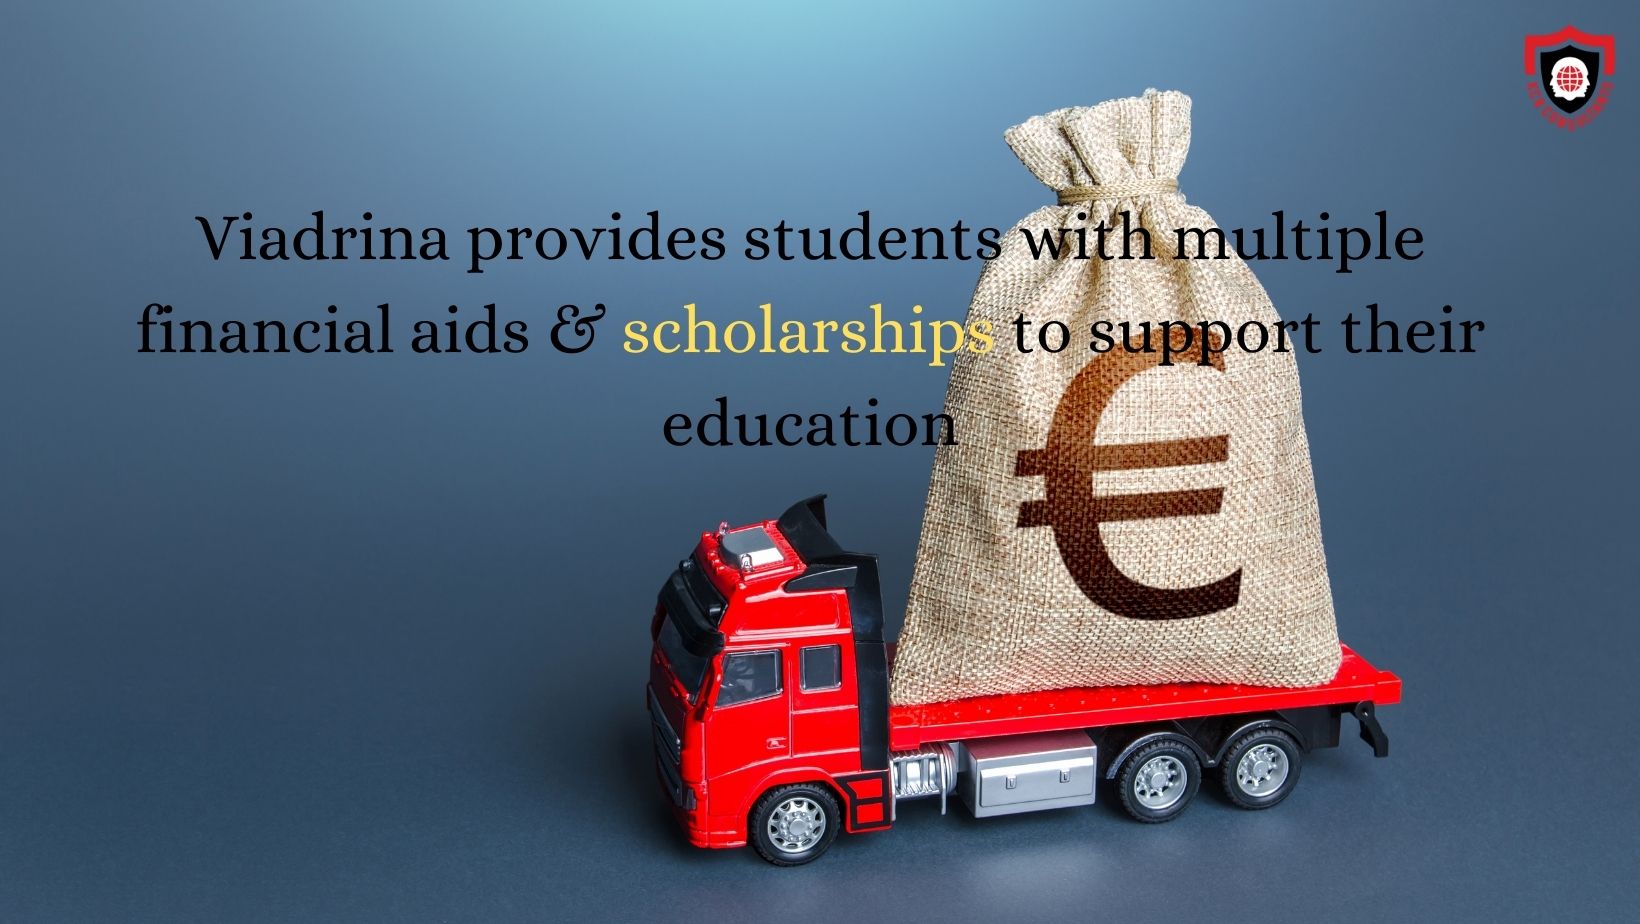 Europa Universitat Viadrina Frankfurt (Oder) - KCR CONSULTANTS - financial aids - scholarships